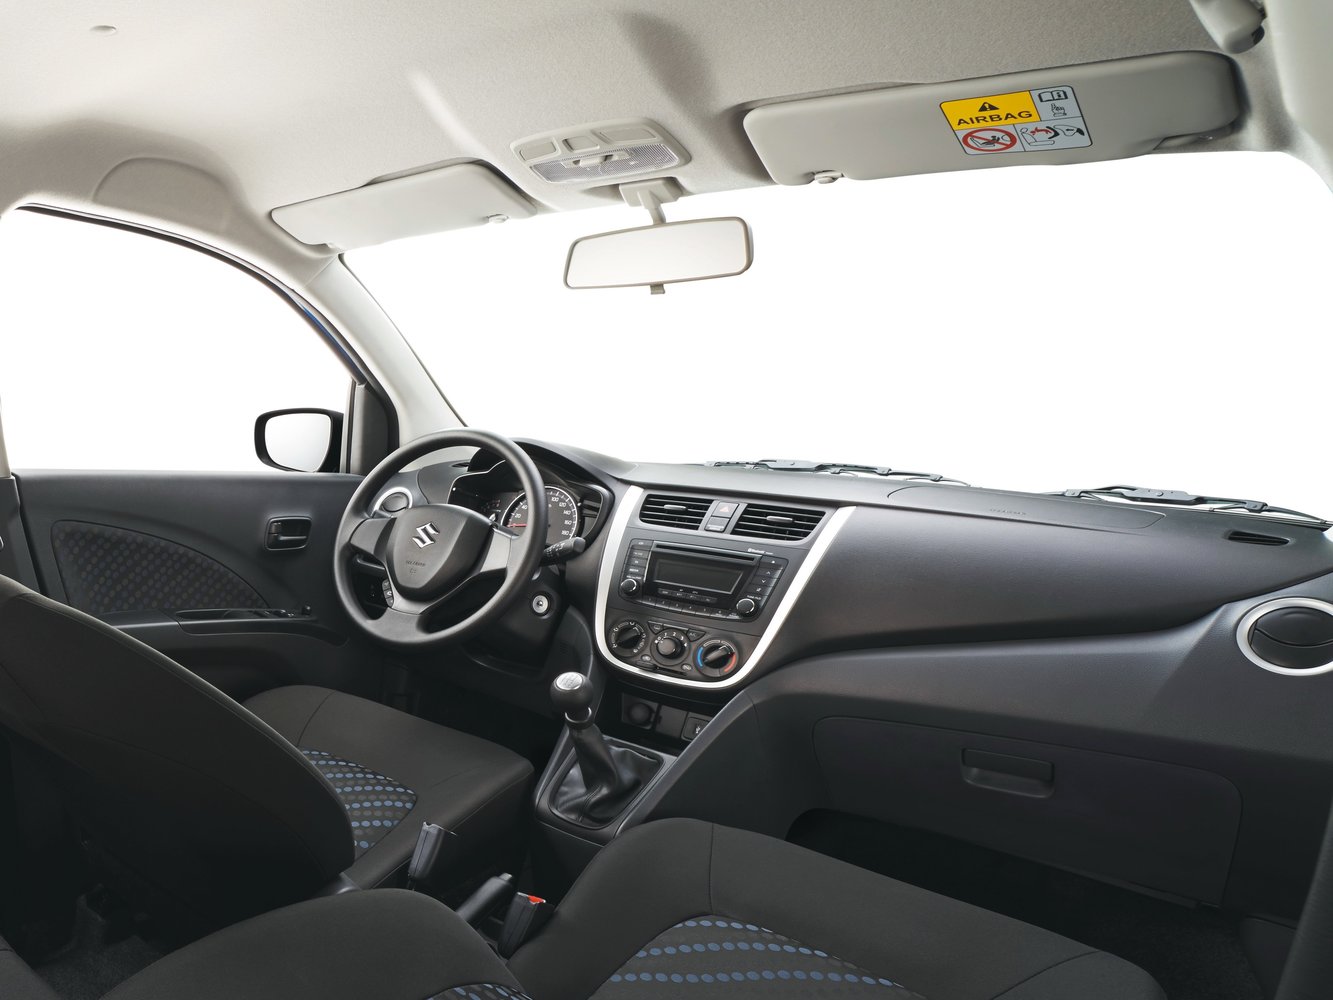 хэтчбек 5 дв. Suzuki Celerio 2014 - 2016г выпуска модификация 1.0 AMT (68 л.с.)